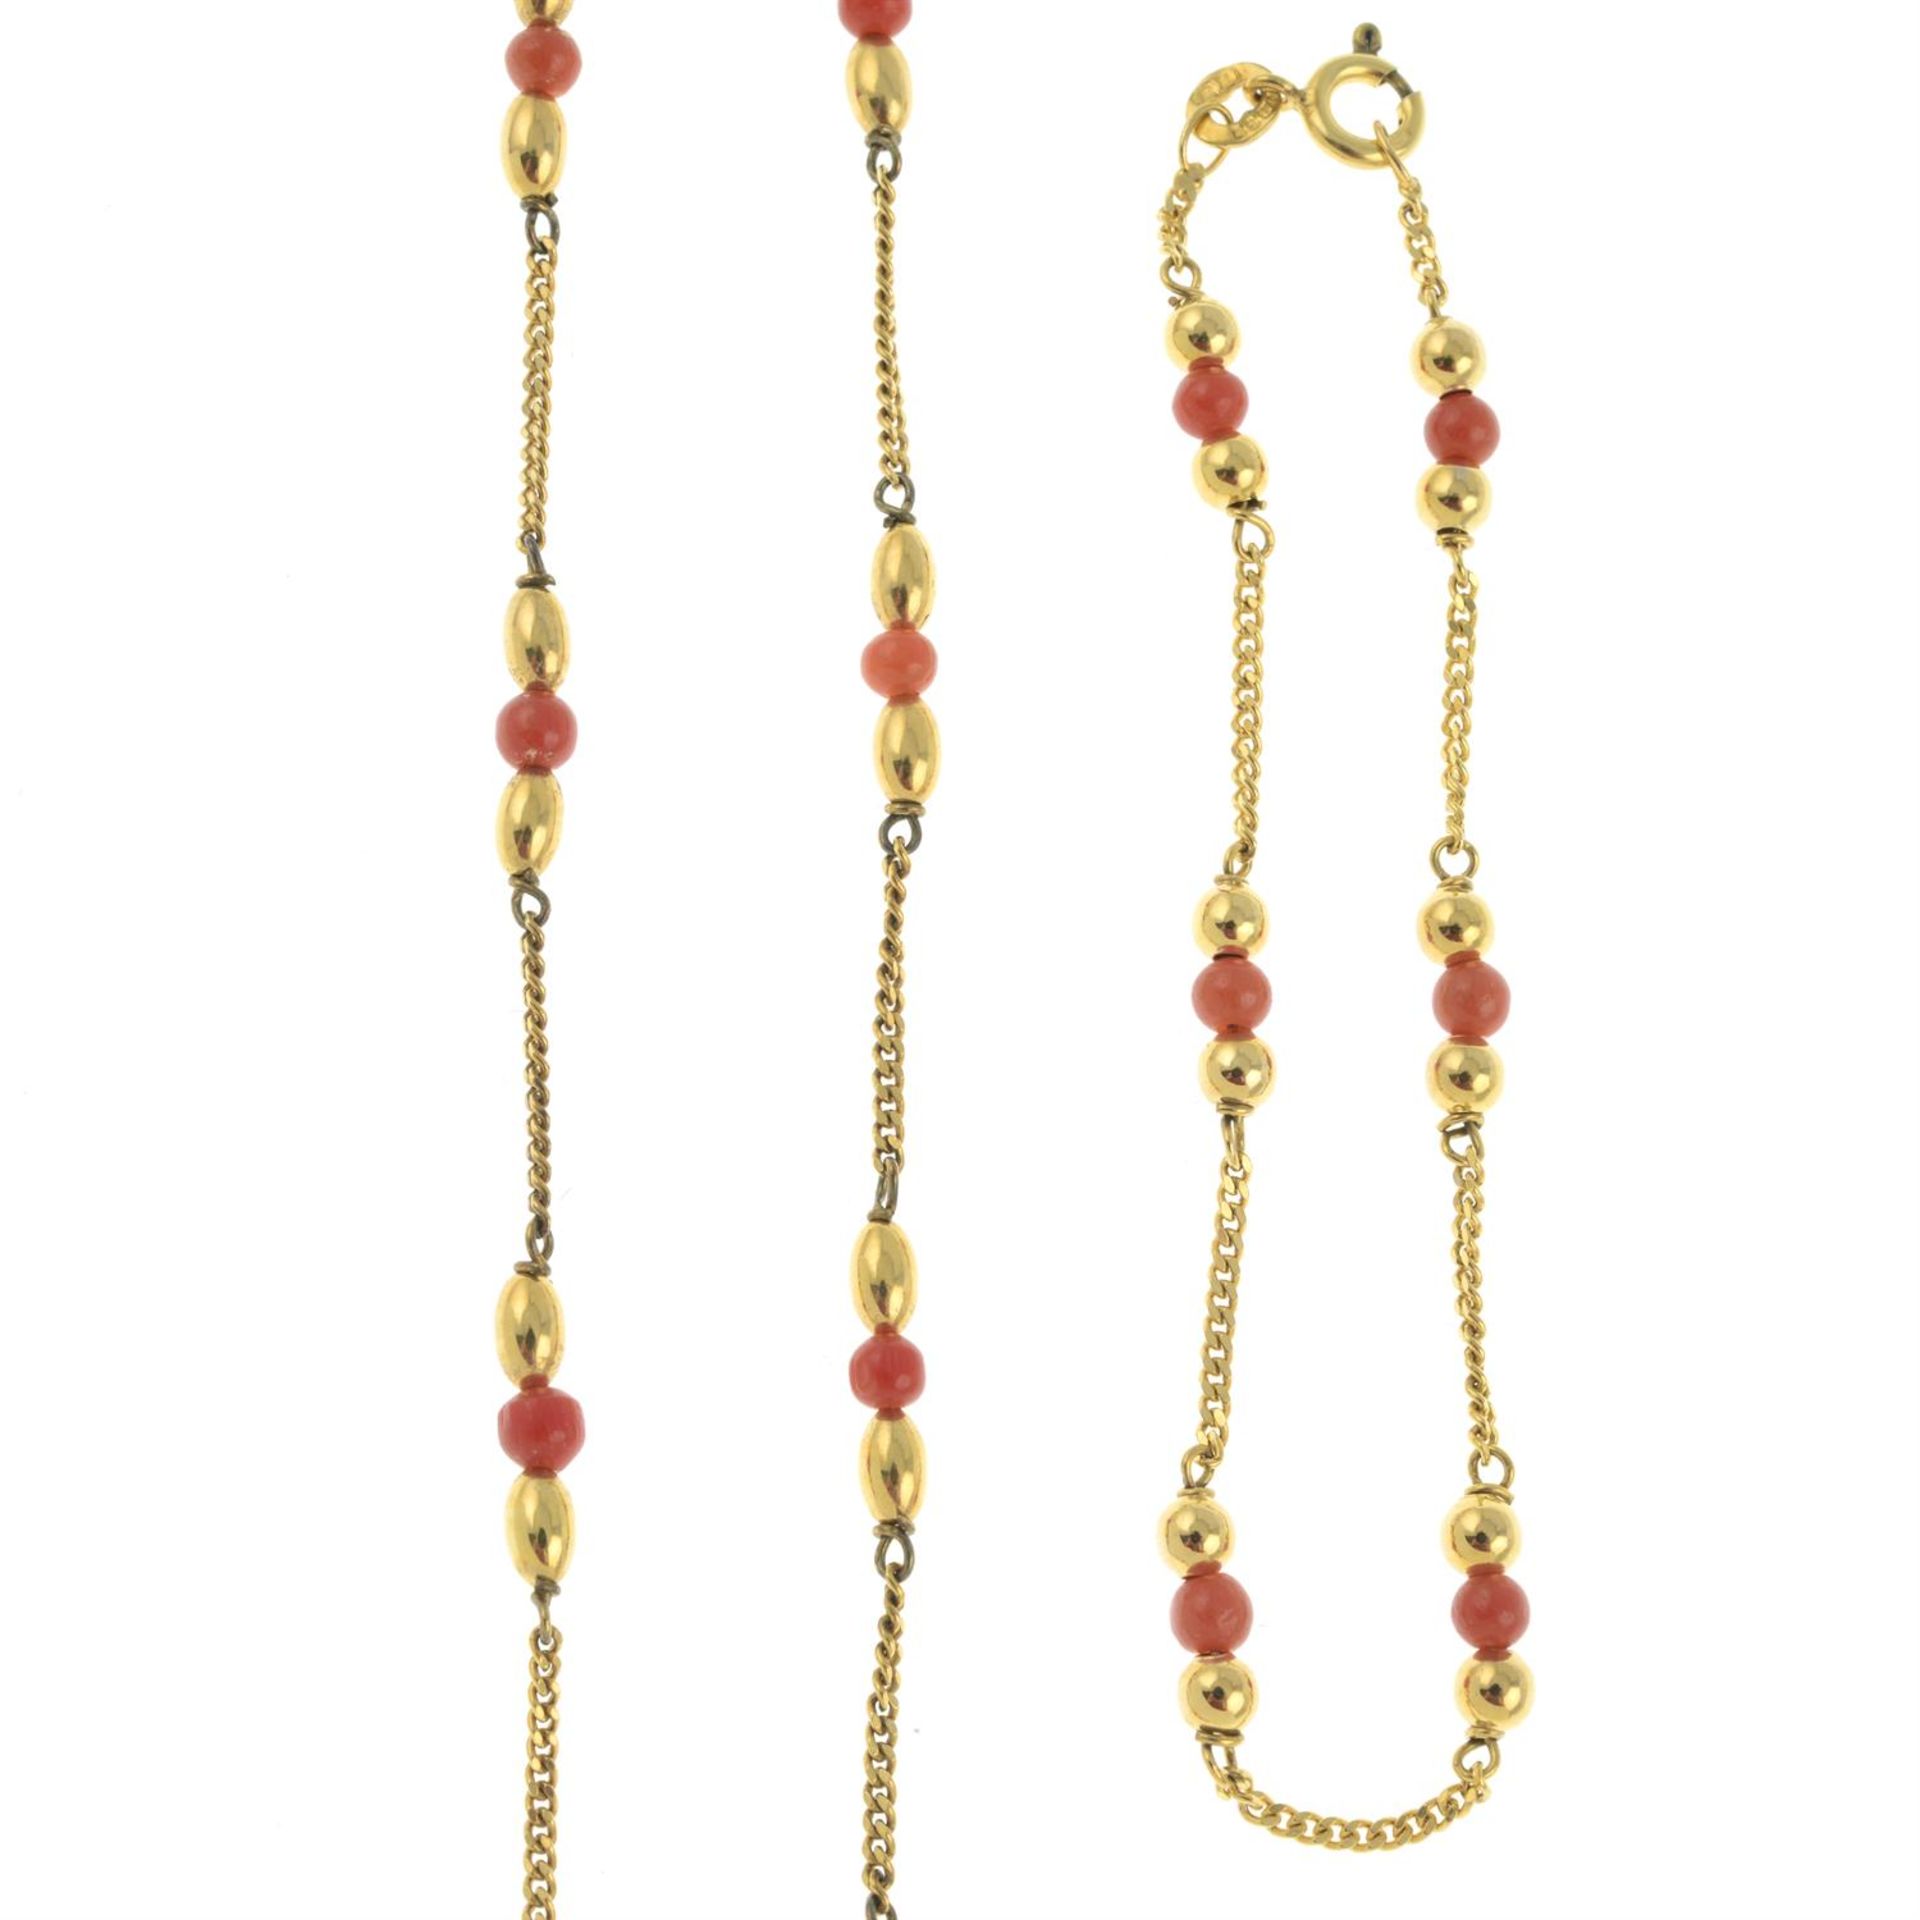 9ct gold coral necklace & bracelet set - Image 2 of 2